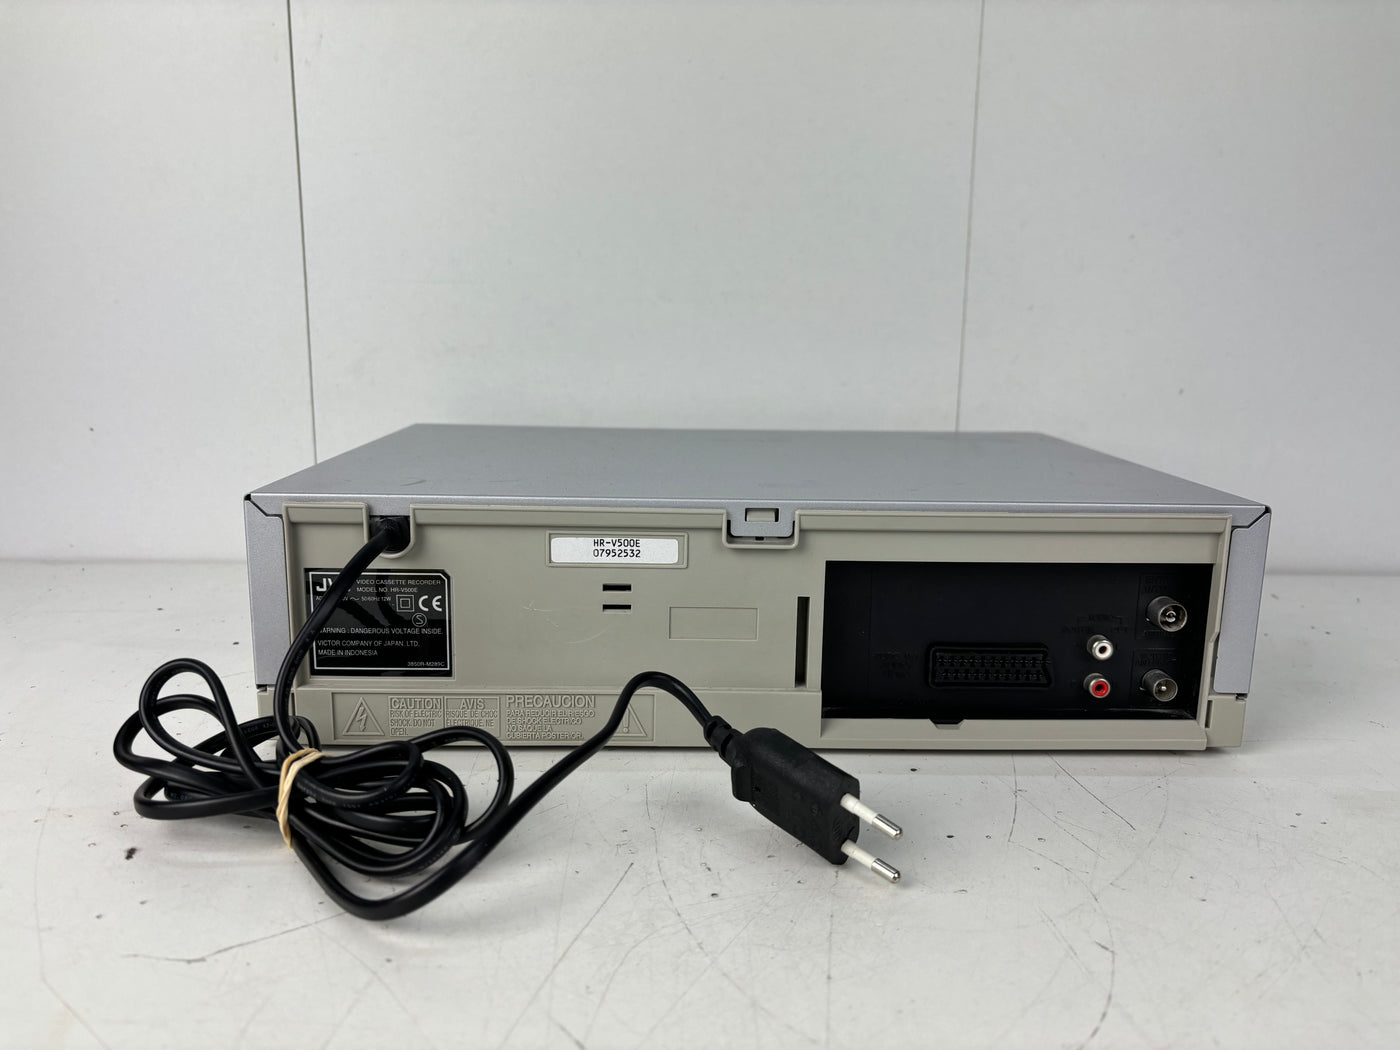 JVC HR-V500 VHS Video Cassette Recorder